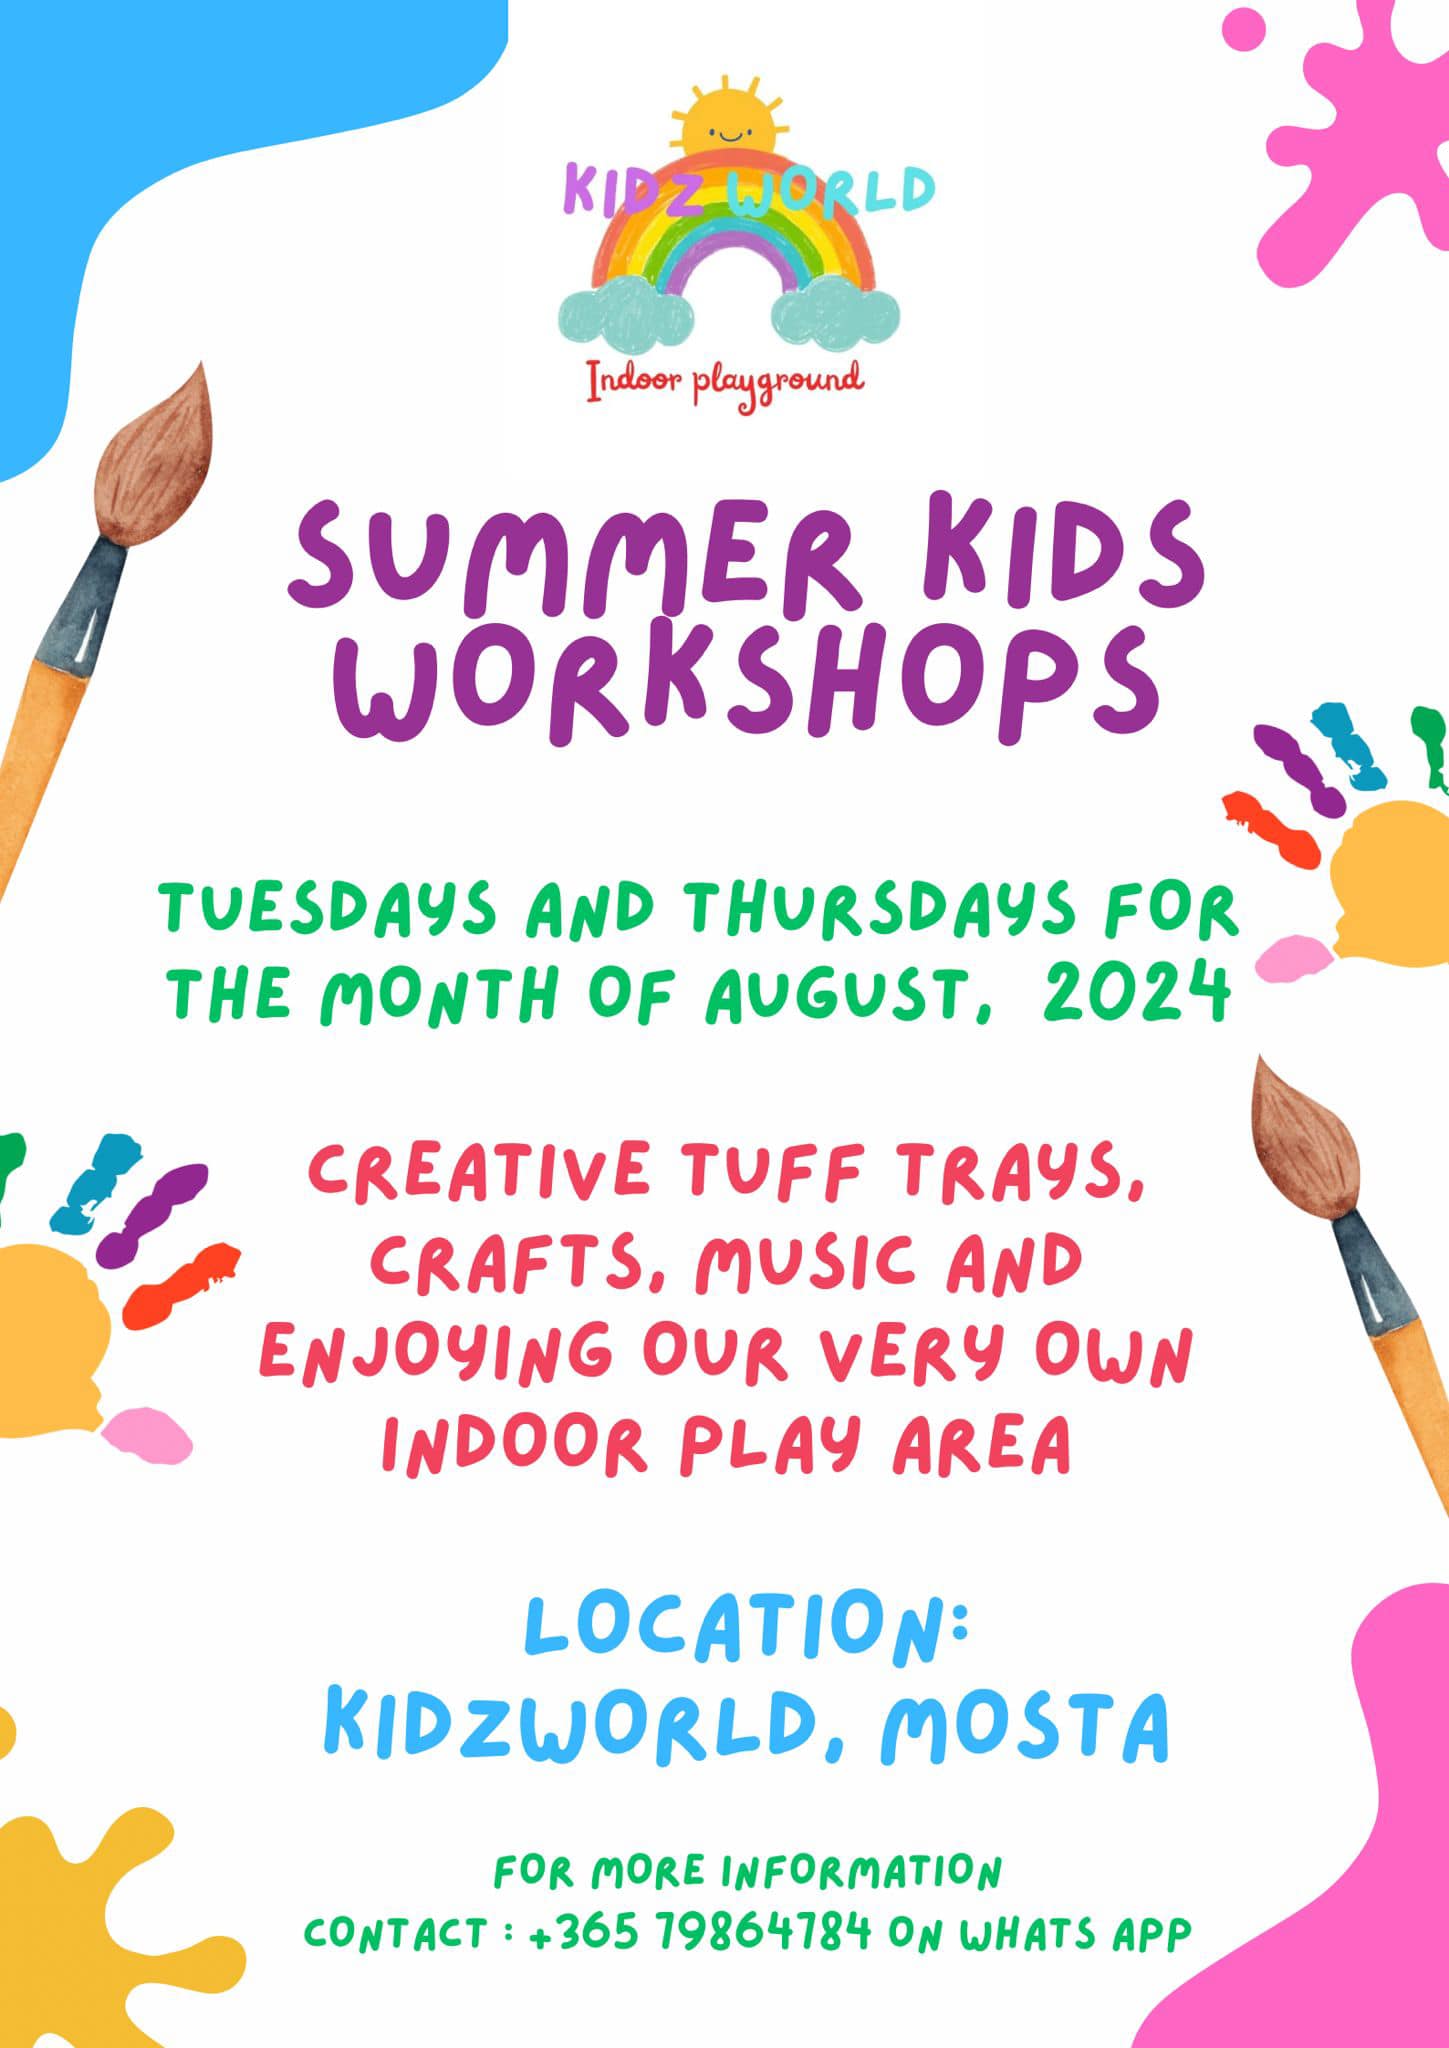 Kidz World - Summer Kids Workshop